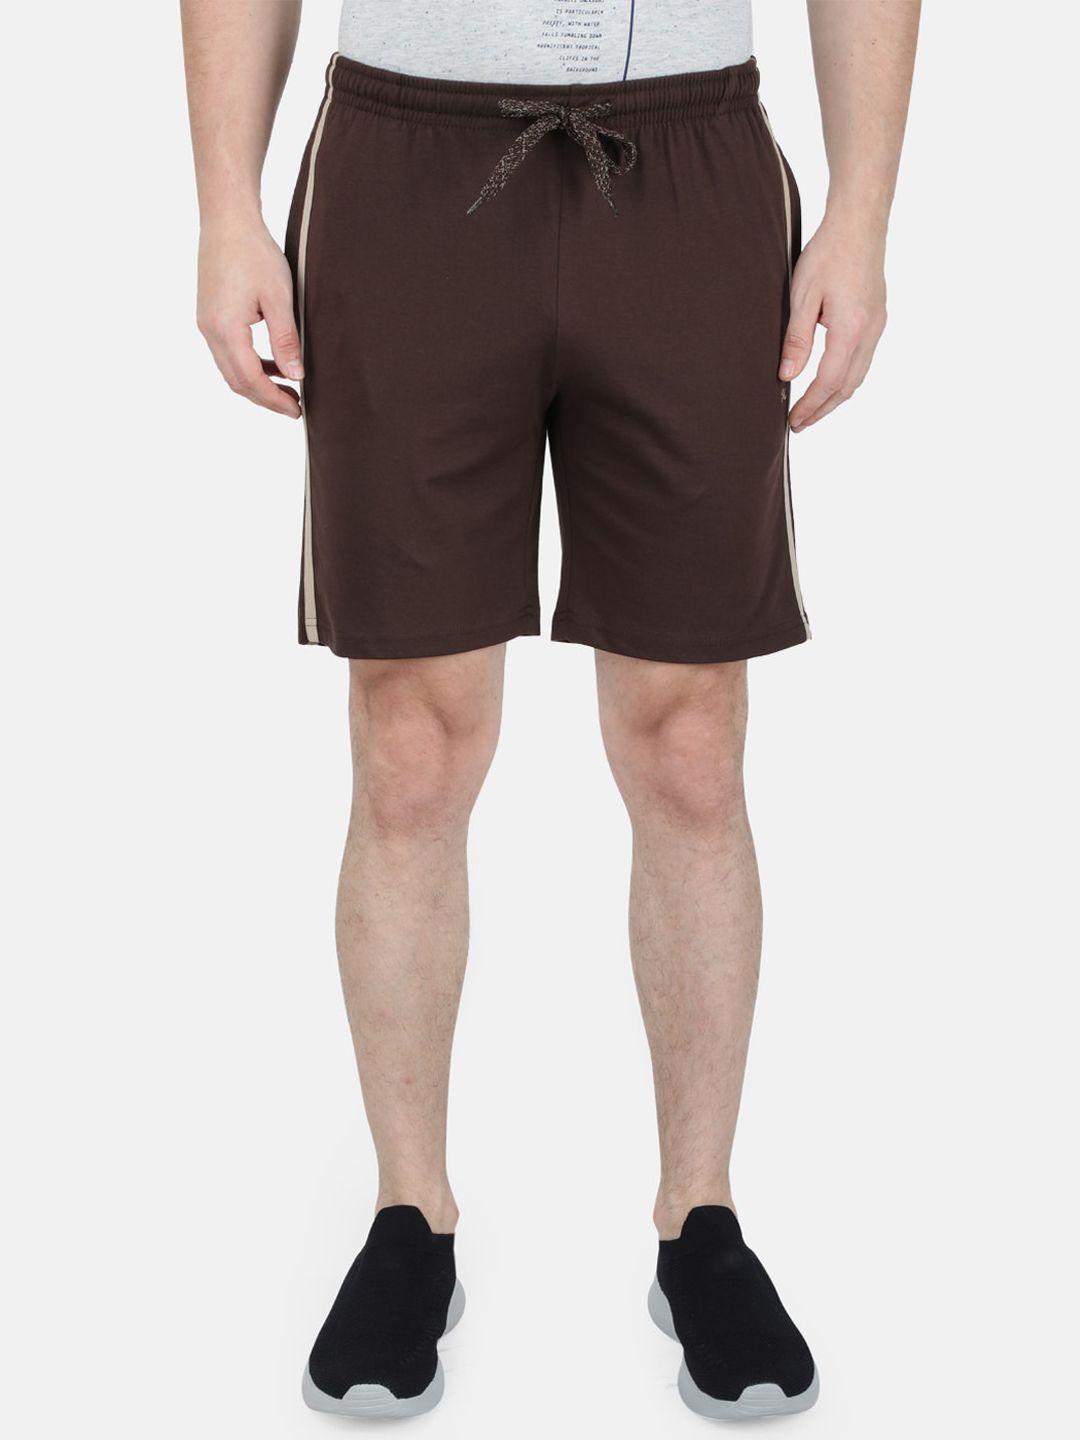 monte-carlo-men-cotton-sports-shorts